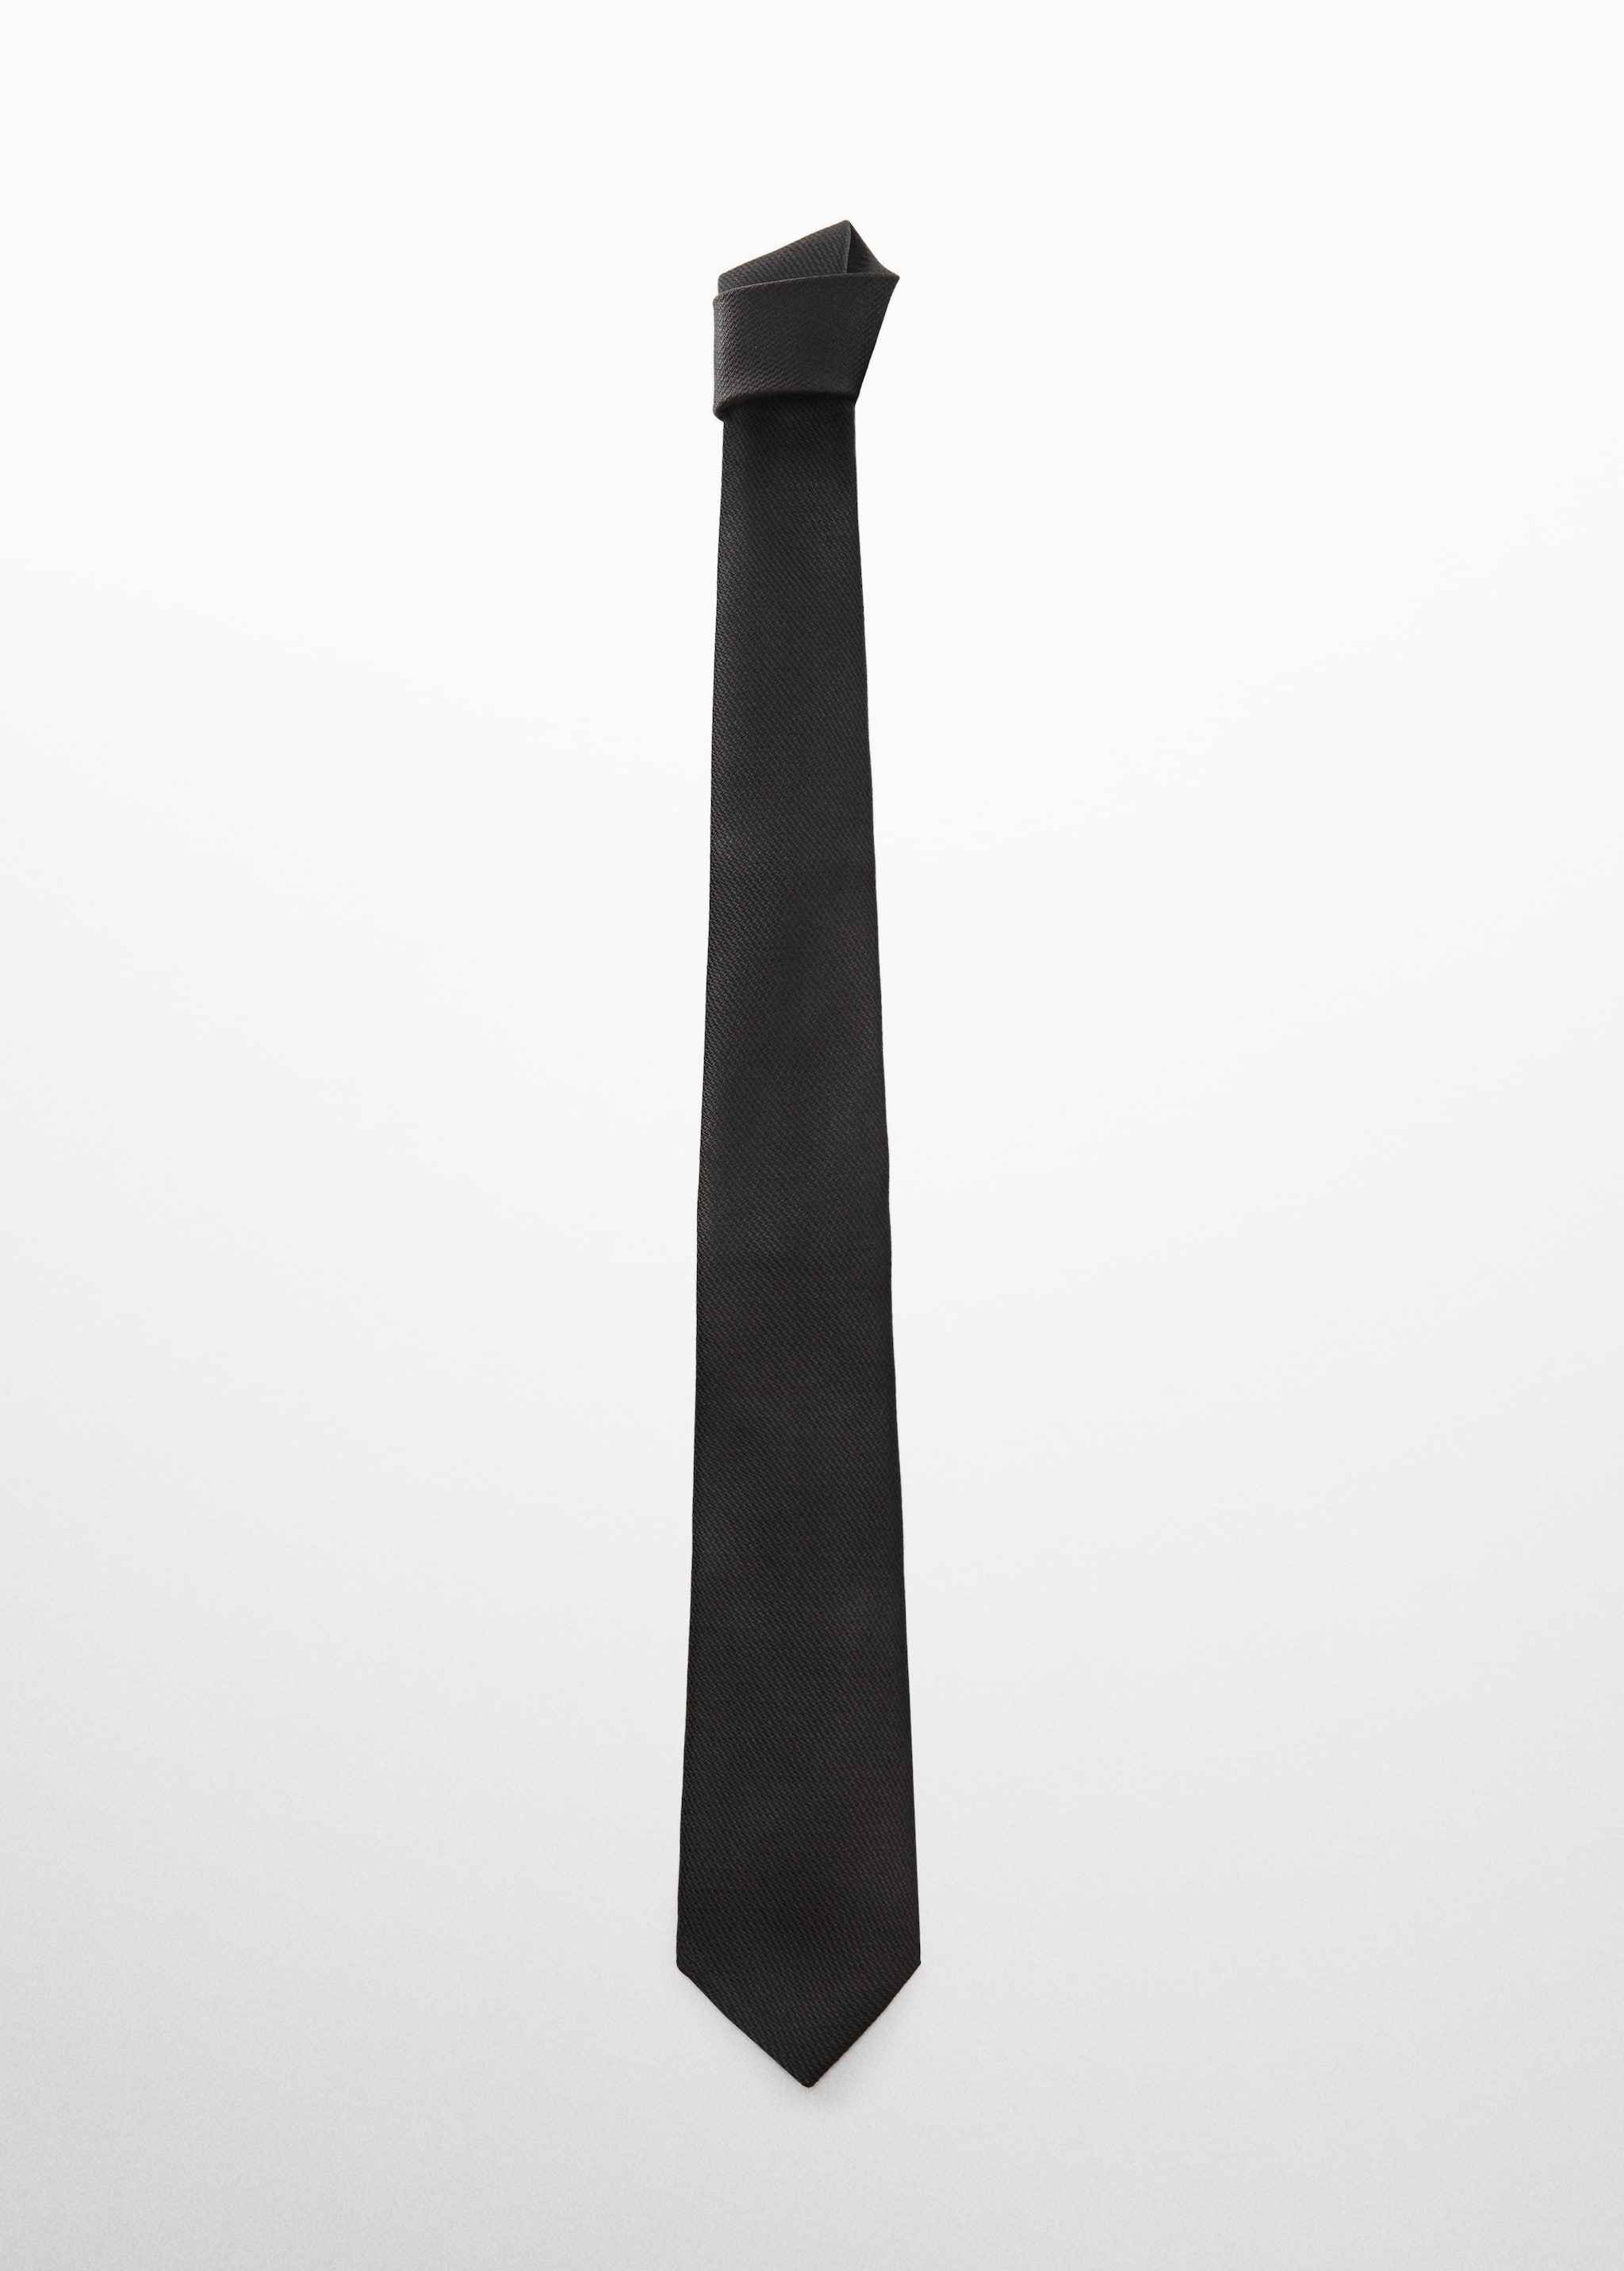 Немнущийся фактурный галстук - Изделие без модели